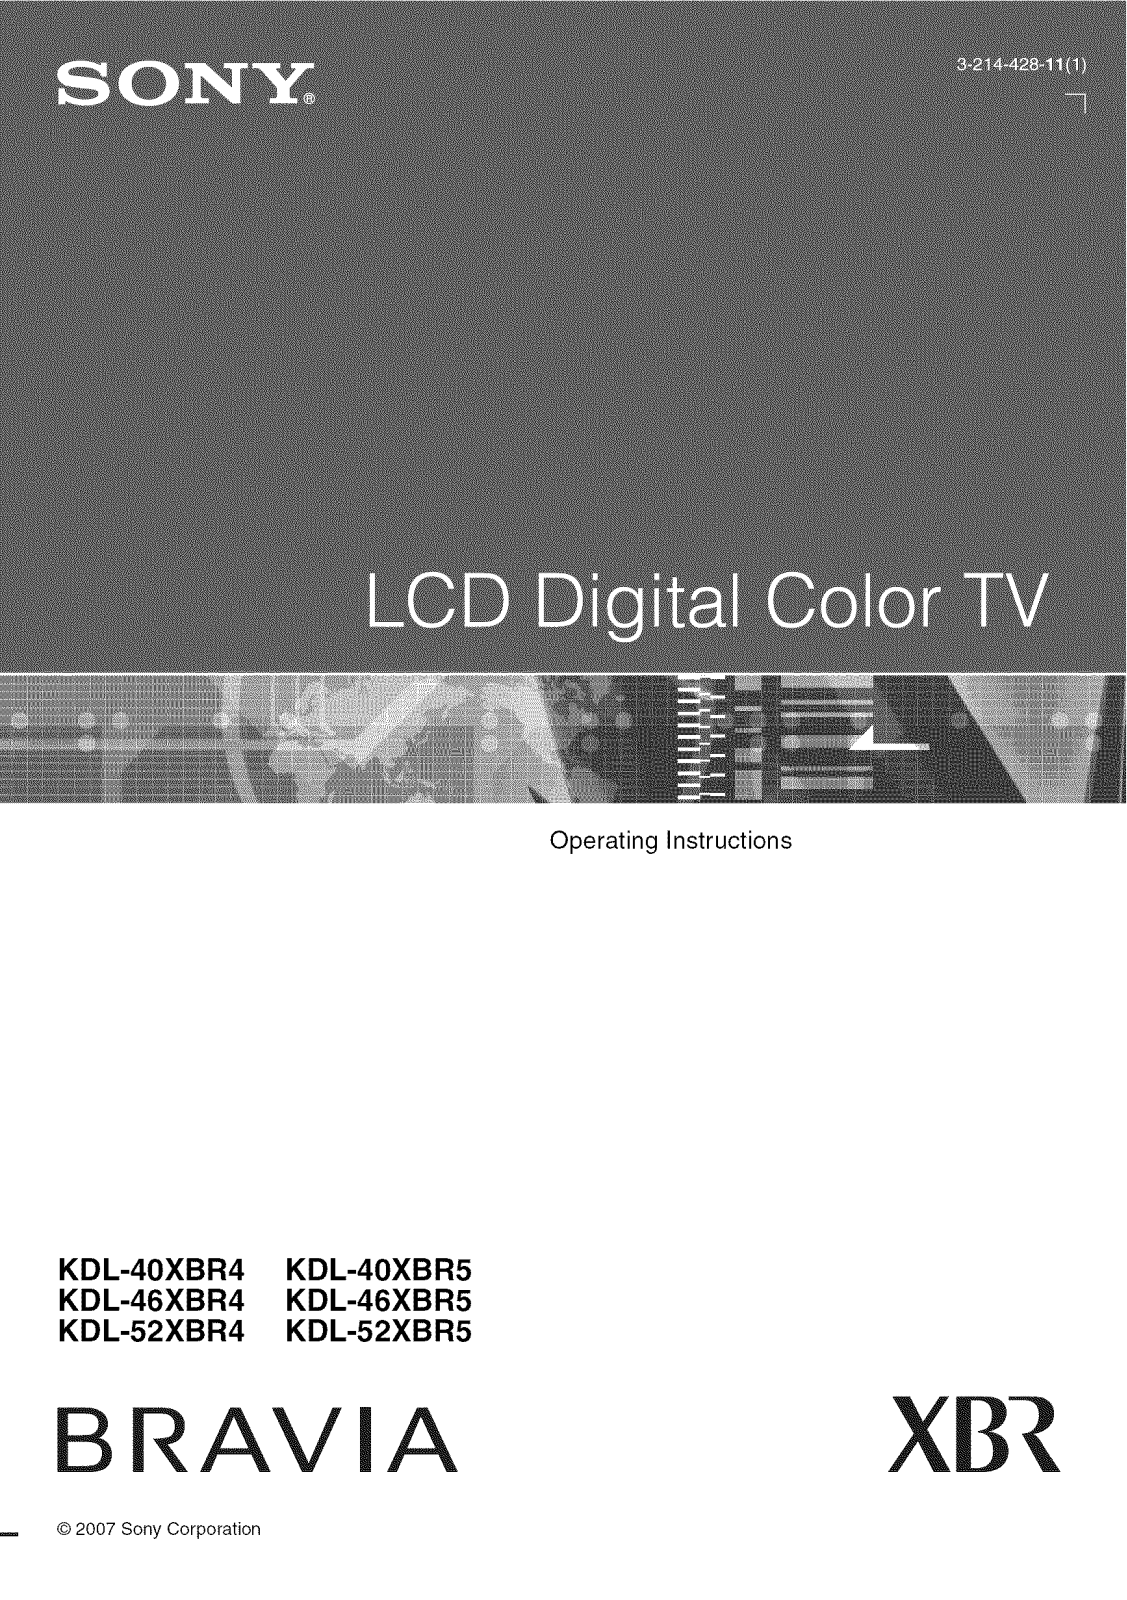 Sony KDL-52XBR5, KDL-52XBR4, KDL-46XBR5, KDL-46XBR4, KDL-40XBR5 Owner’s Manual